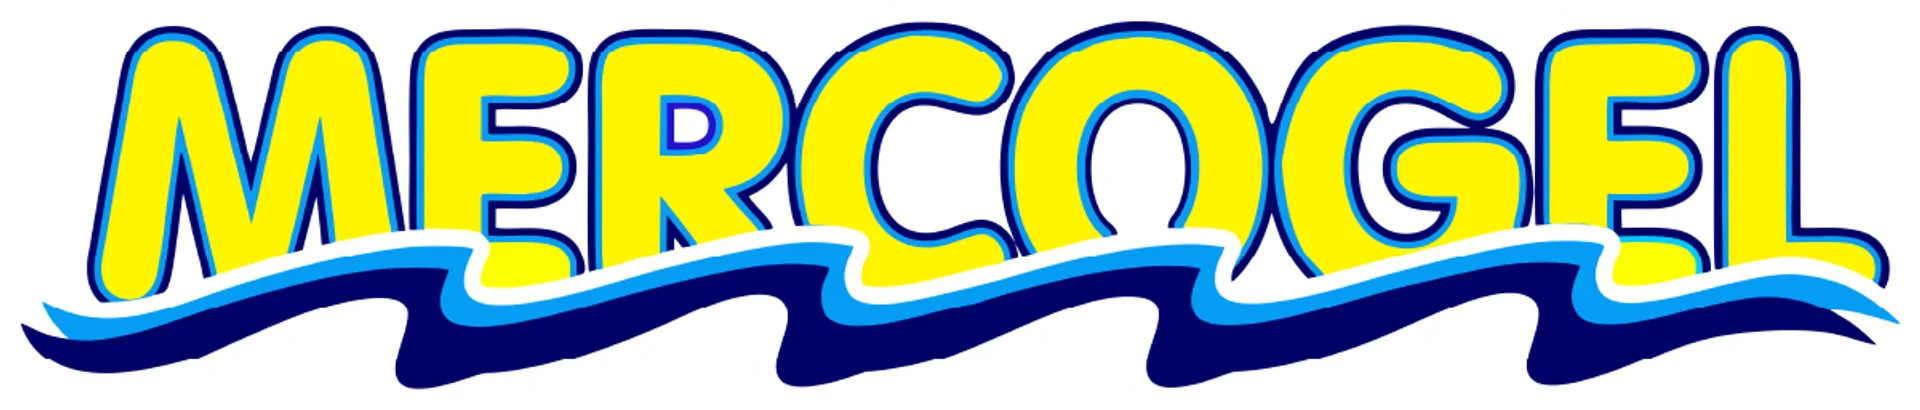 MERCOGEL logo